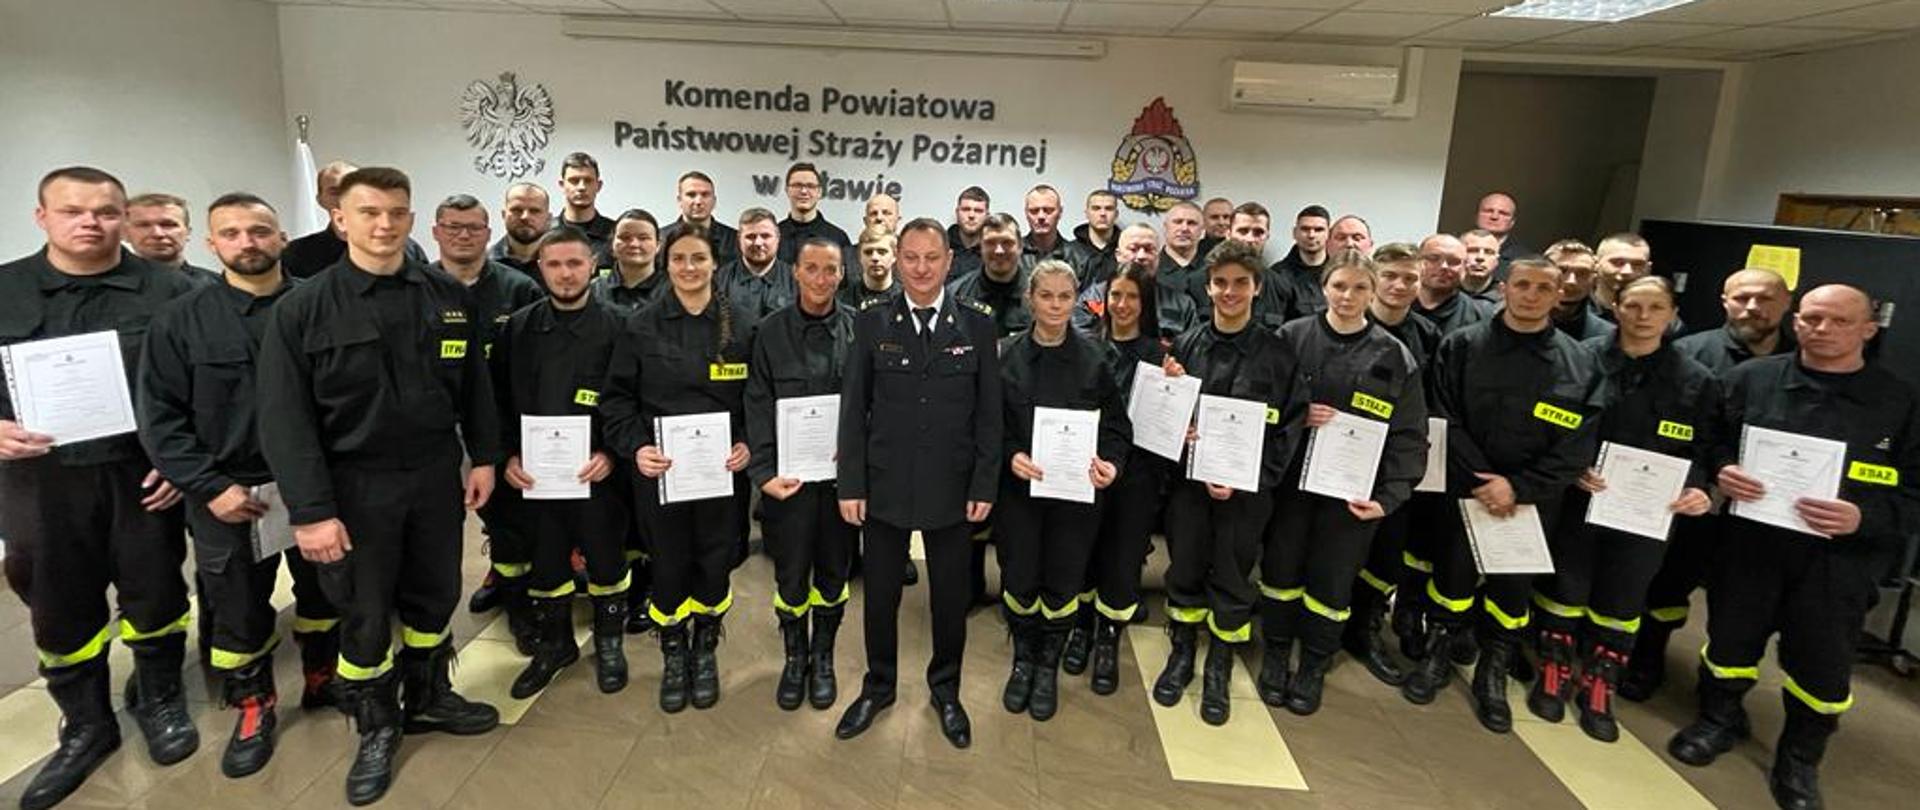 Już ponad 670 czynnych druhów ochotniczych straży pożarnych czuwa nad bezpieczeństwem mieszkańców powiatu mławskiego 